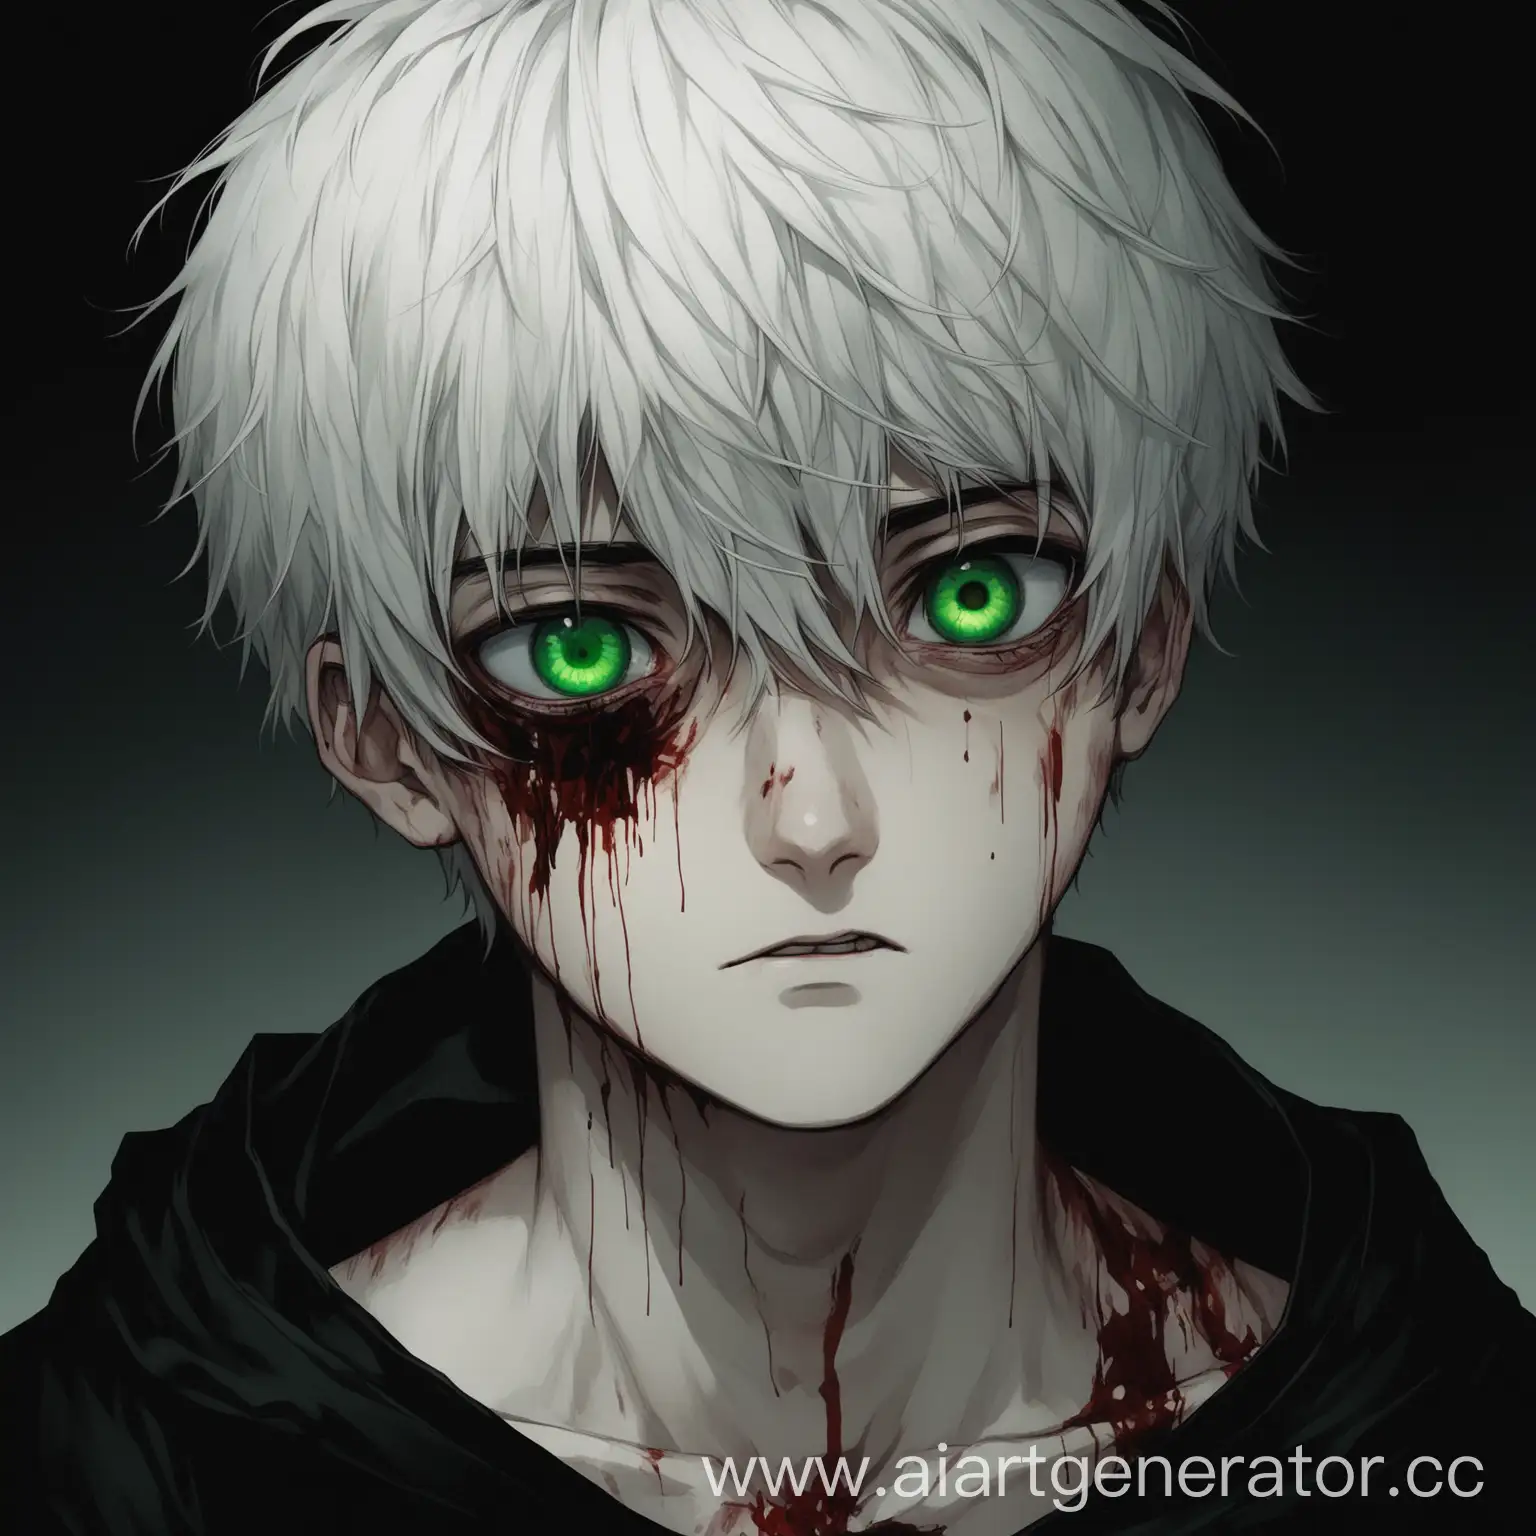 Белые короткие волосы, парень 20 лет, зеленые глаза, синяки под глазами, побитый много ран и крови